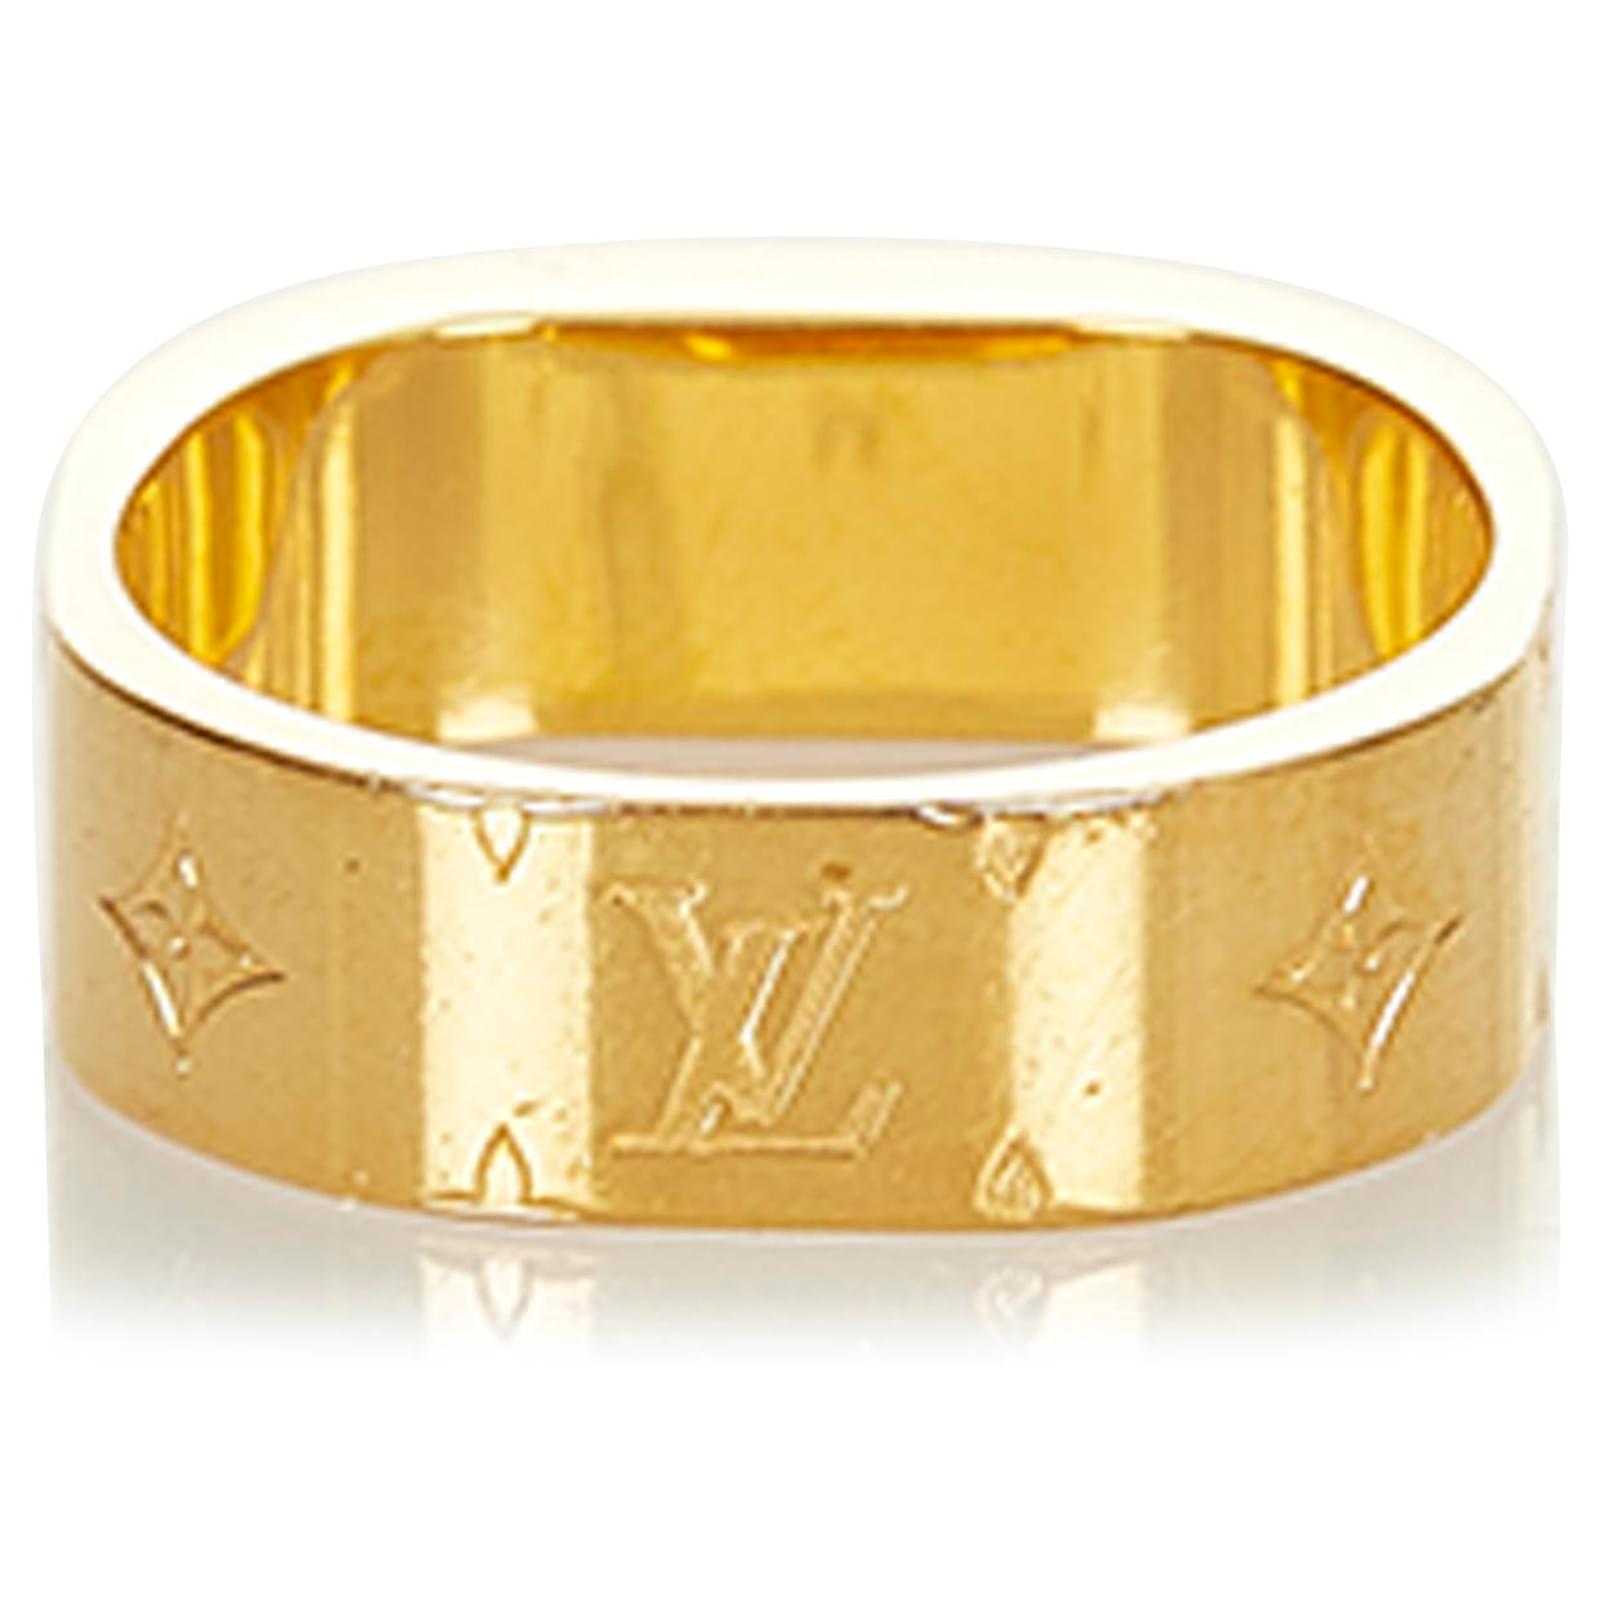 Nanogram ring Louis Vuitton Gold size 5 ¼ US in Metal - 34503057